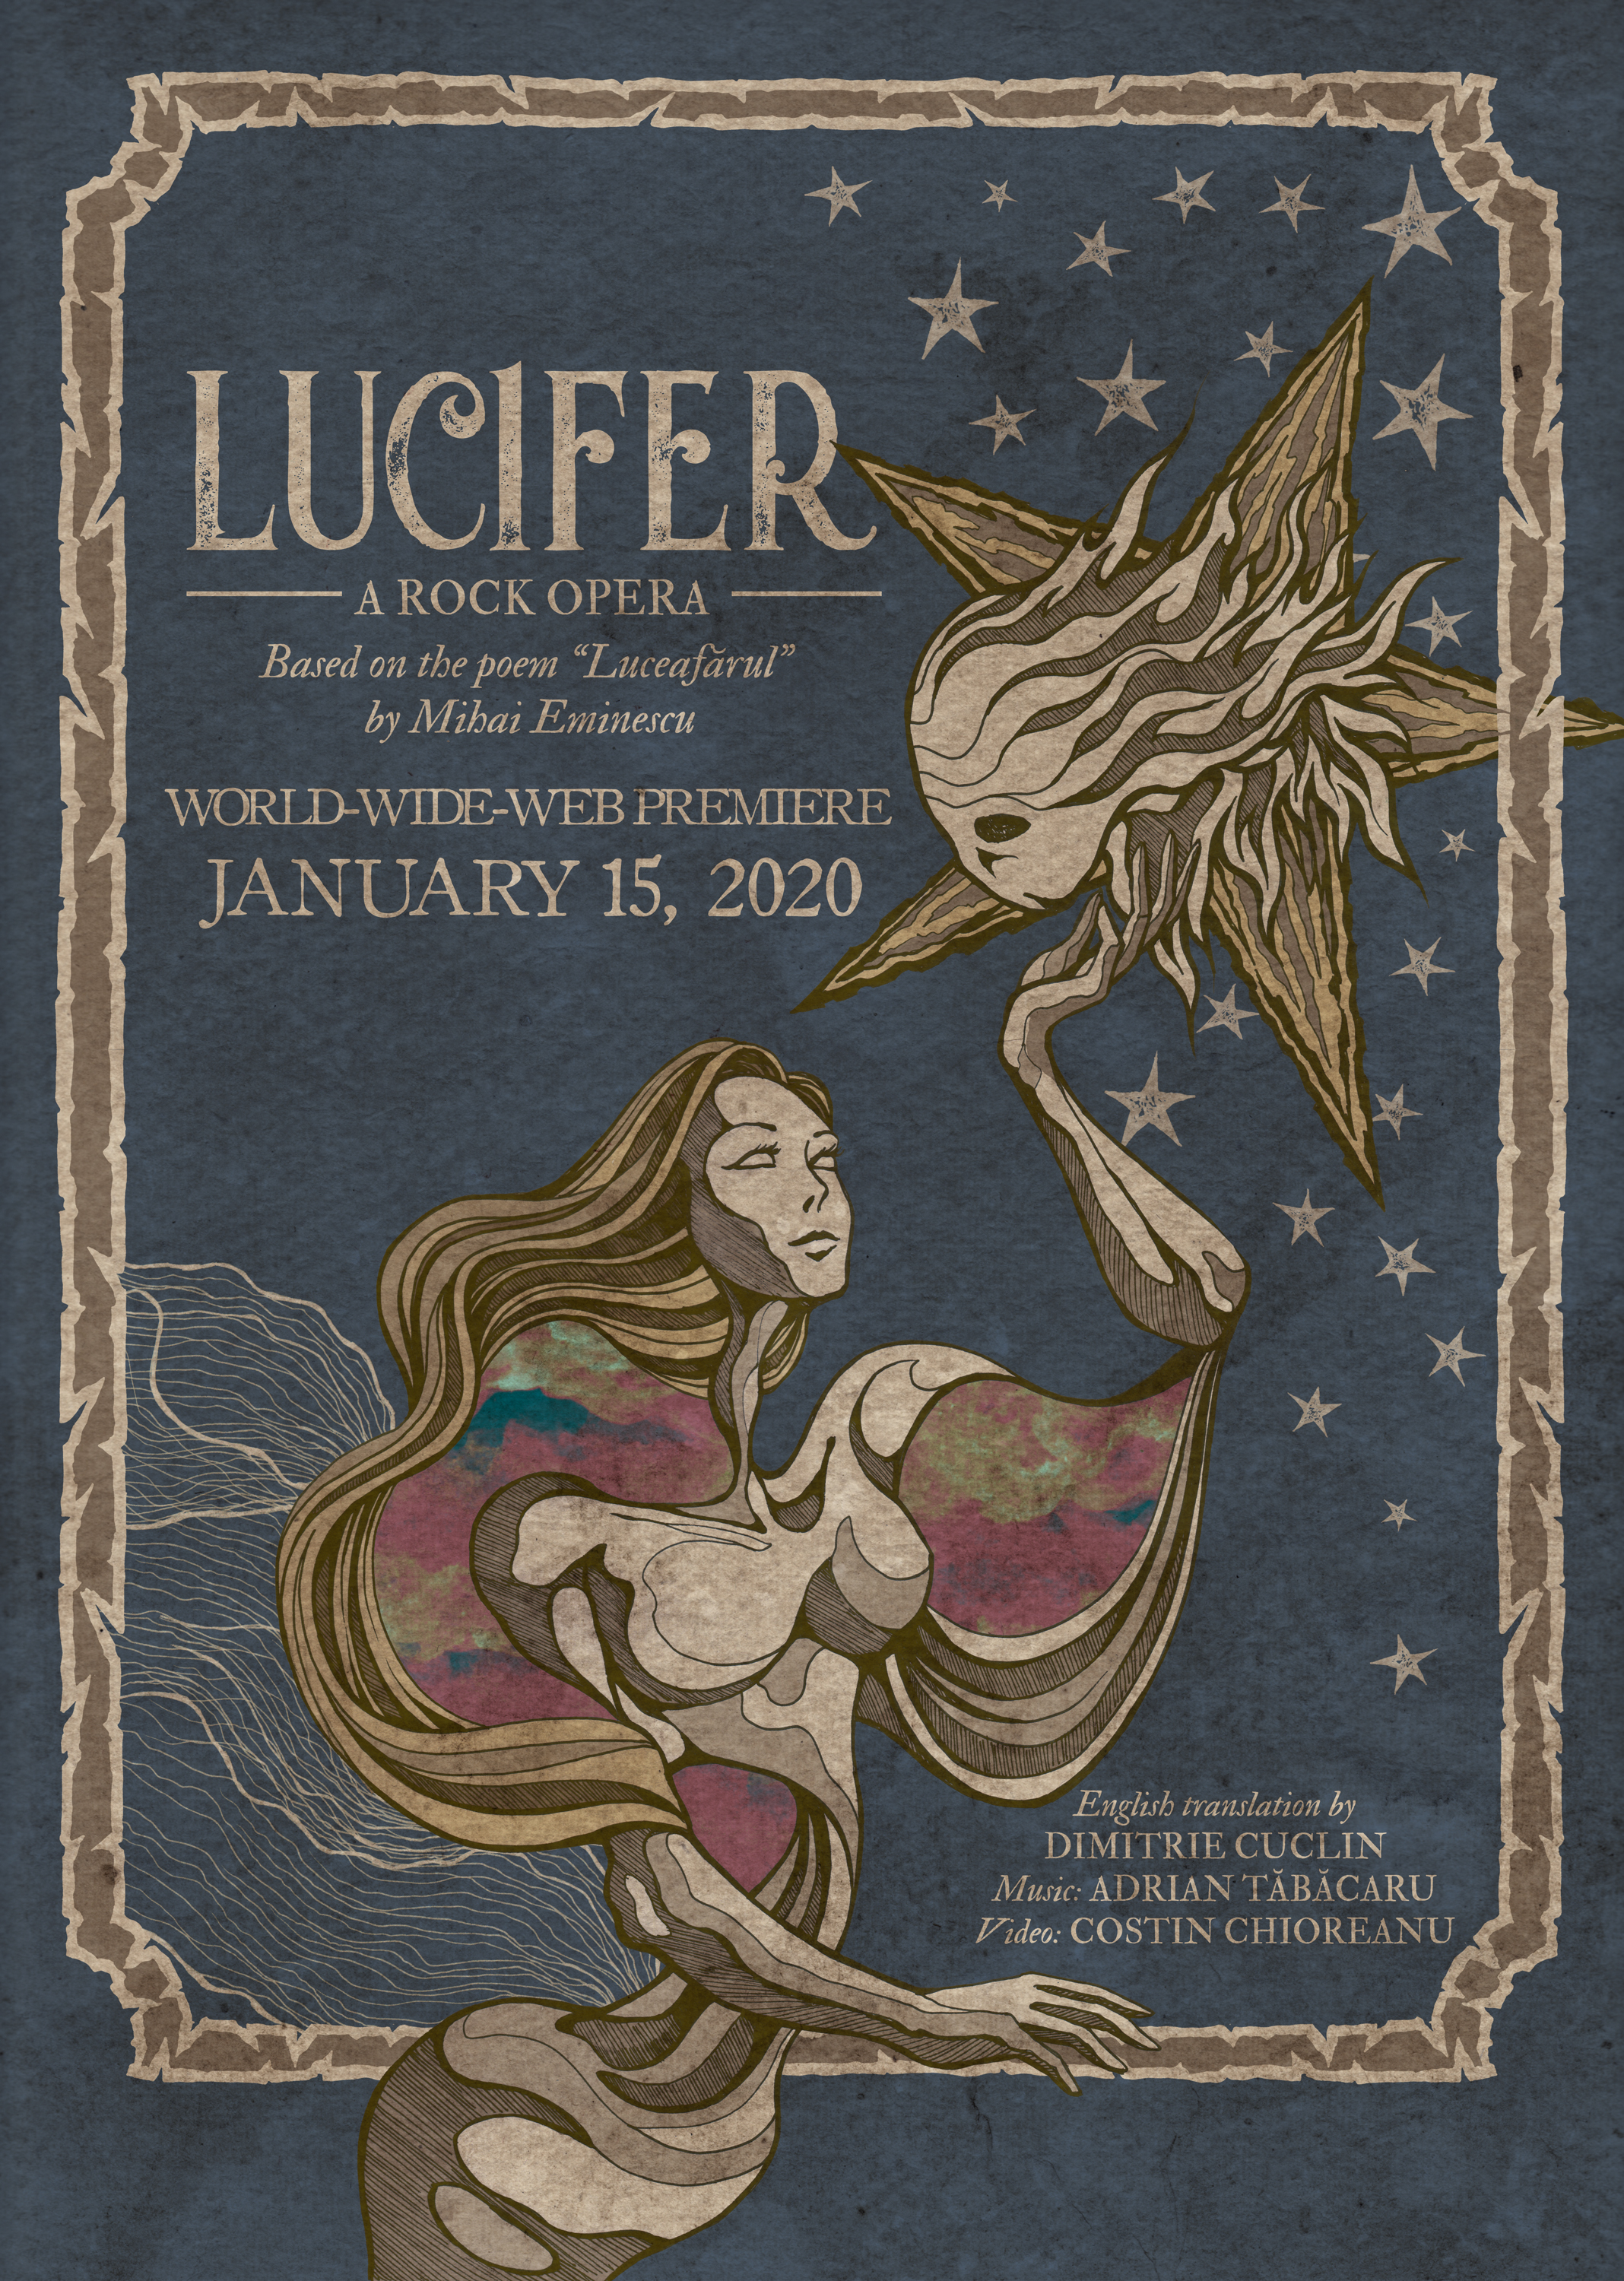 Lucifer - A Rok Opera se bazeaza pe poezia luceafarul de poetul roman Mihai Eminescu. Lucifer - A Rock Opera este tradusa in engleza de Dumitrie Cuclin, compusa si produsa de Adrian Tabacaru in perioada 2014-2018.